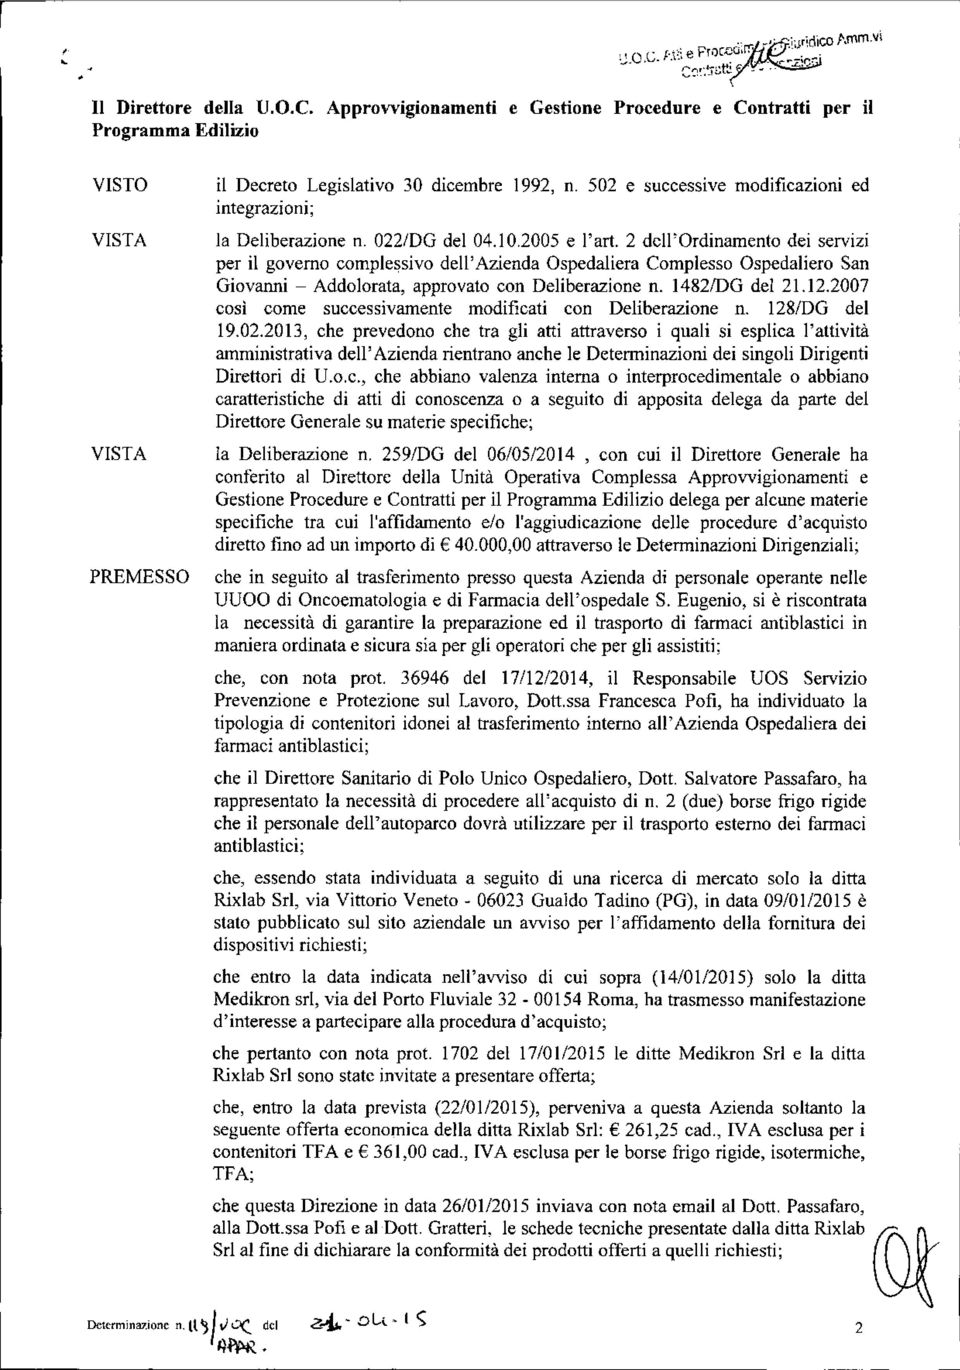 2 dell'ordinamento dei servizi per il governo complessivo dell'azienda Ospedaliera Complesso Ospedaliero San Giovanni - Addolorata, approvato con Deliberazione n. 1482IDG del 21.12.